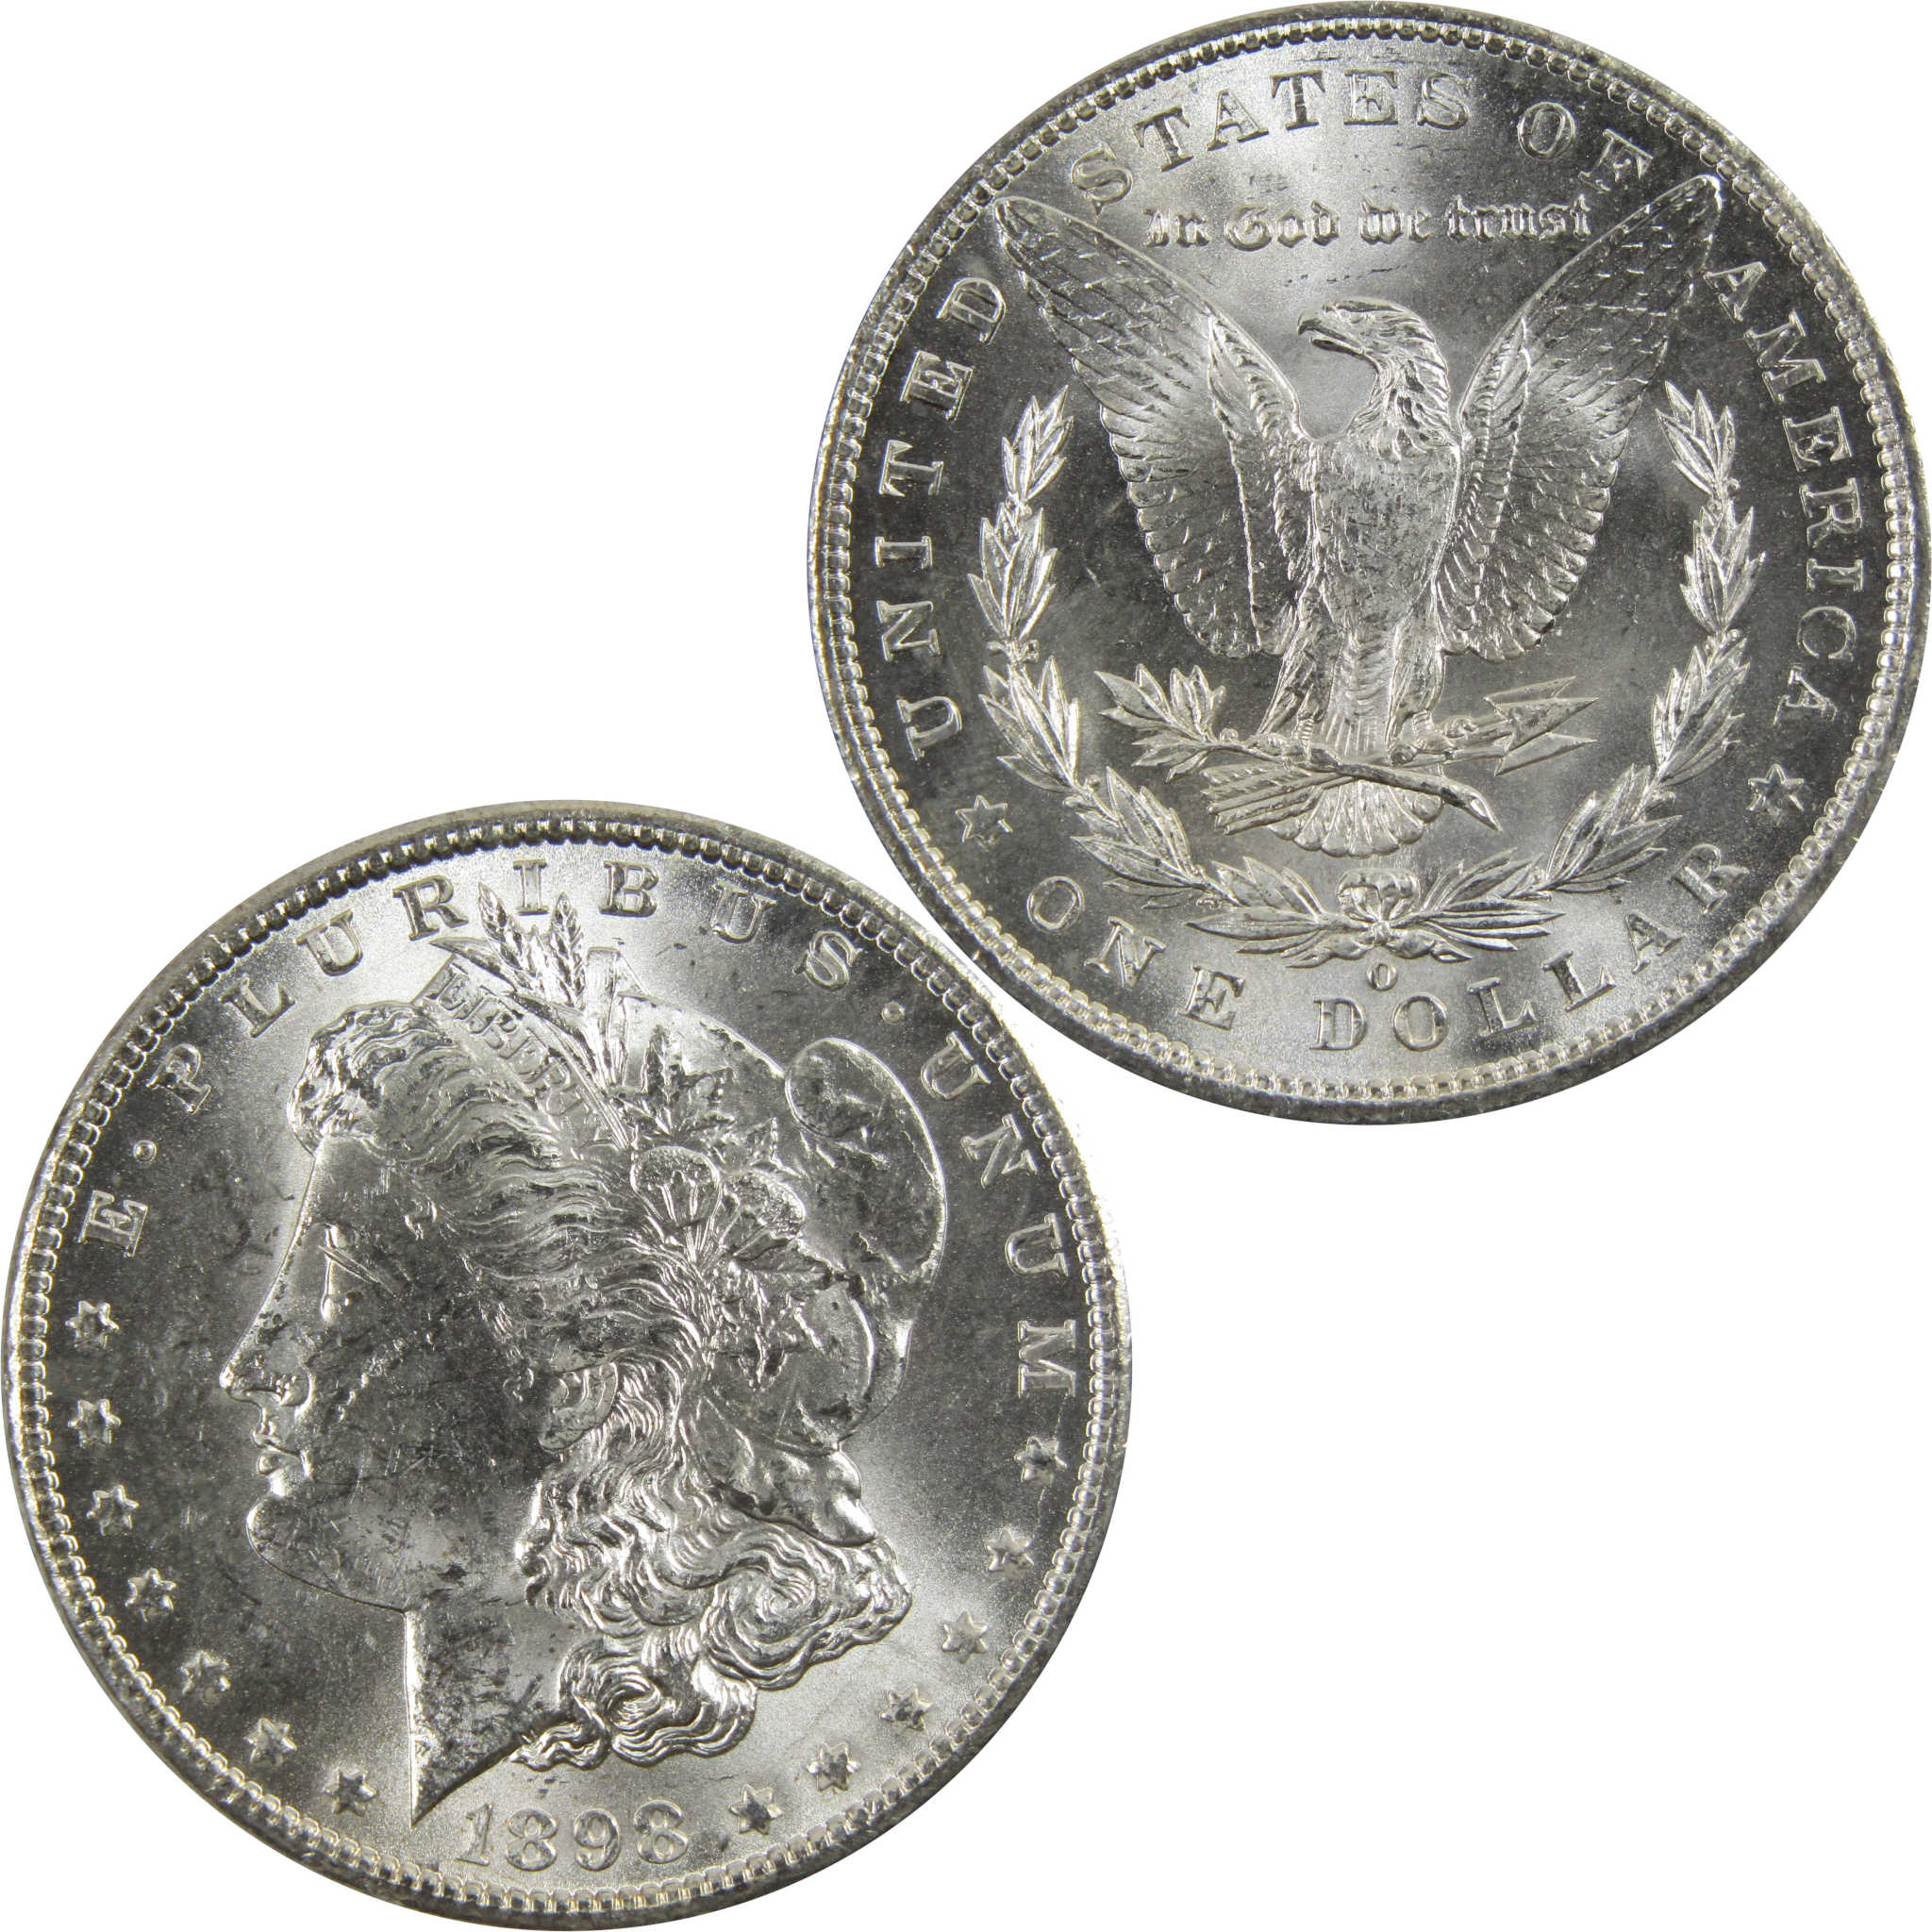 1898 O Morgan Dollar BU Uncirculated 90% Silver $1 Coin SKU:I5286 - Morgan coin - Morgan silver dollar - Morgan silver dollar for sale - Profile Coins &amp; Collectibles